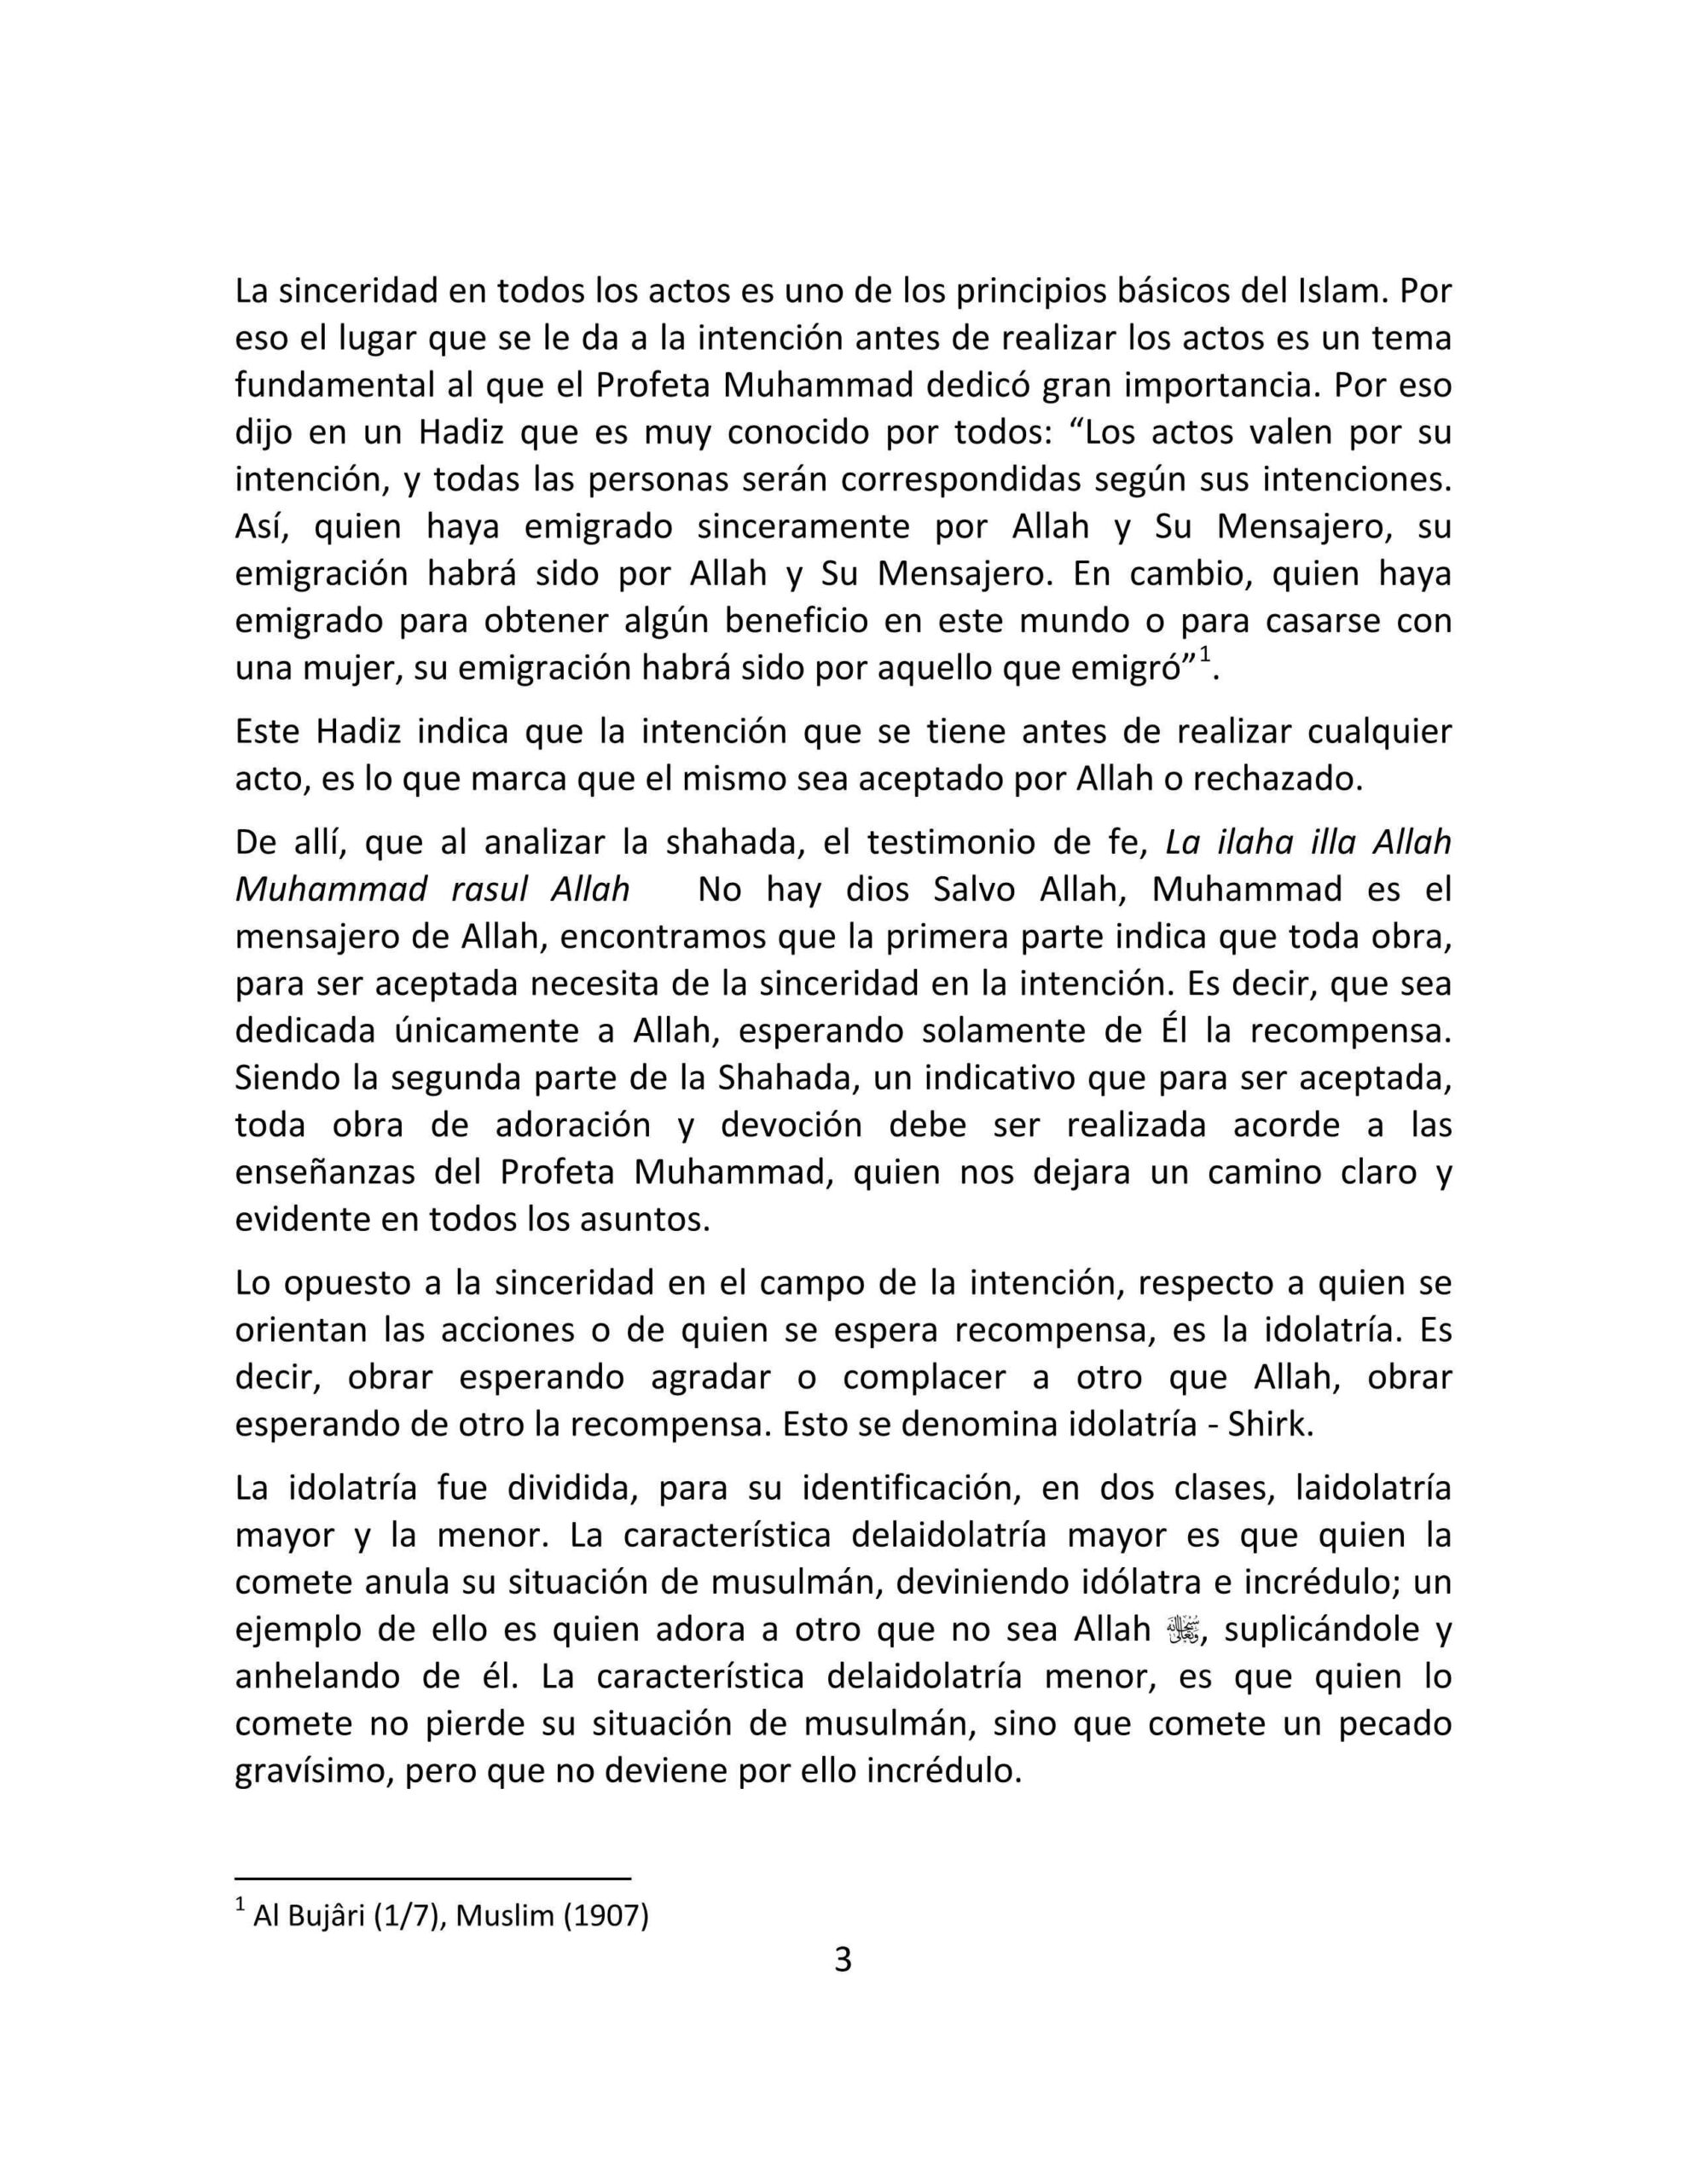 إسباني  خطورة الشرك الأصغر  El peligro de la idolatría menor (Shirk Asgar).pdf, 6-Sayfa 